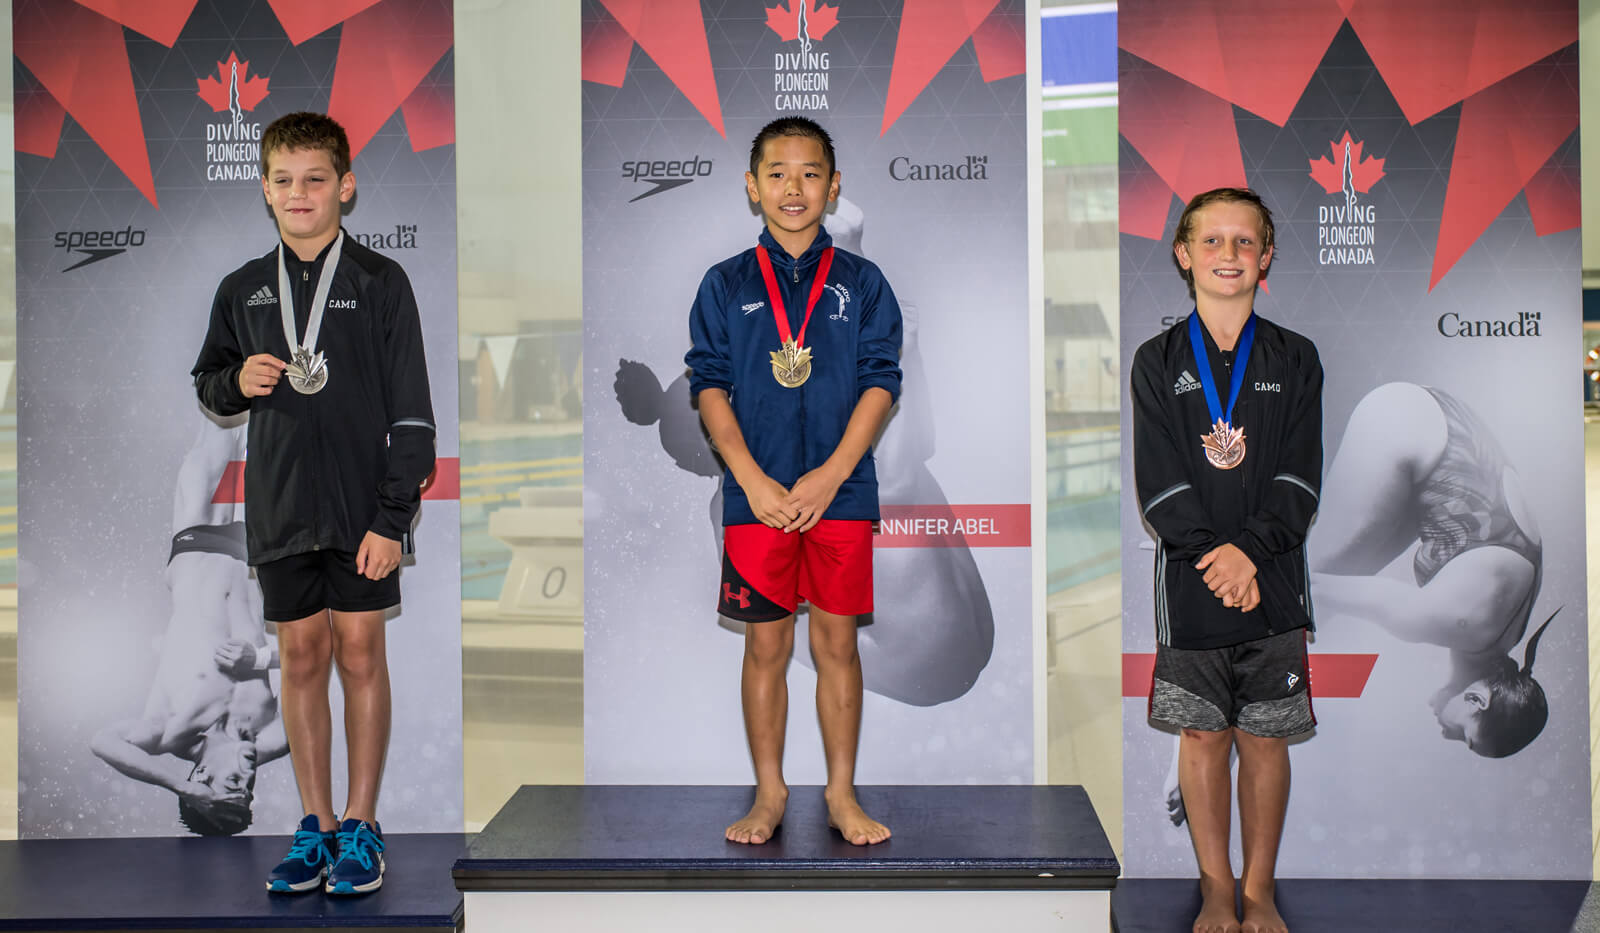 Paul Yang et Benjamin Tessier obtiennent une deuxième médaille d’or aux championnats nationaux juniors de développement de plongeon Speedo 2018